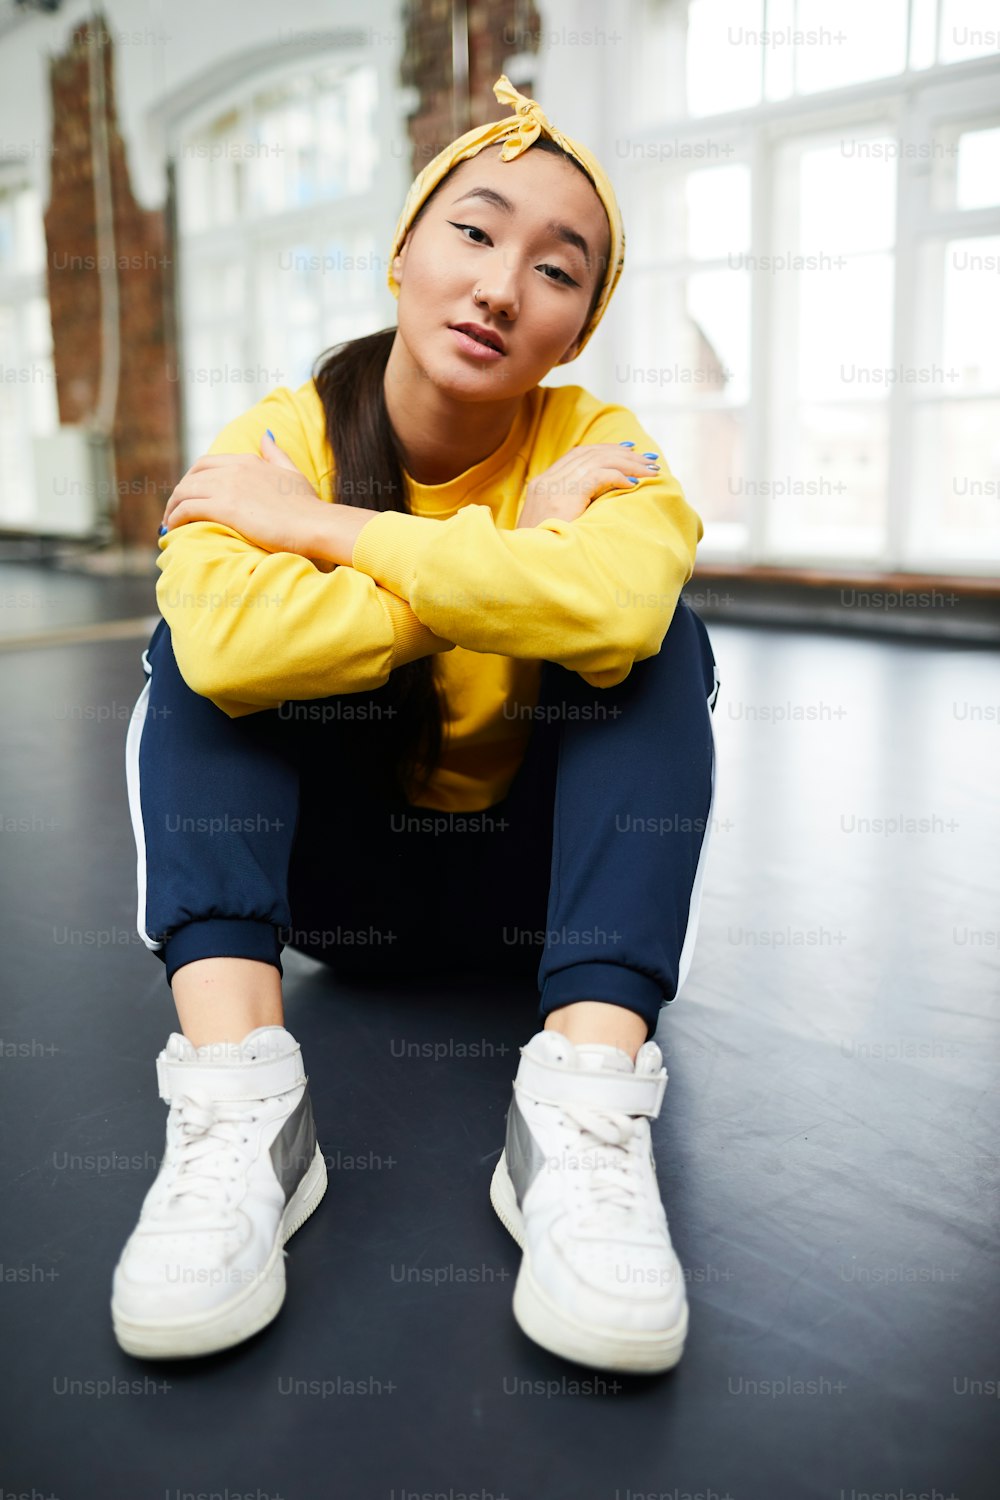 카메라 앞에서 현대 무용 스튜디오의 바닥에 앉아 있는 활동복을 입은 고요한 어린 소녀